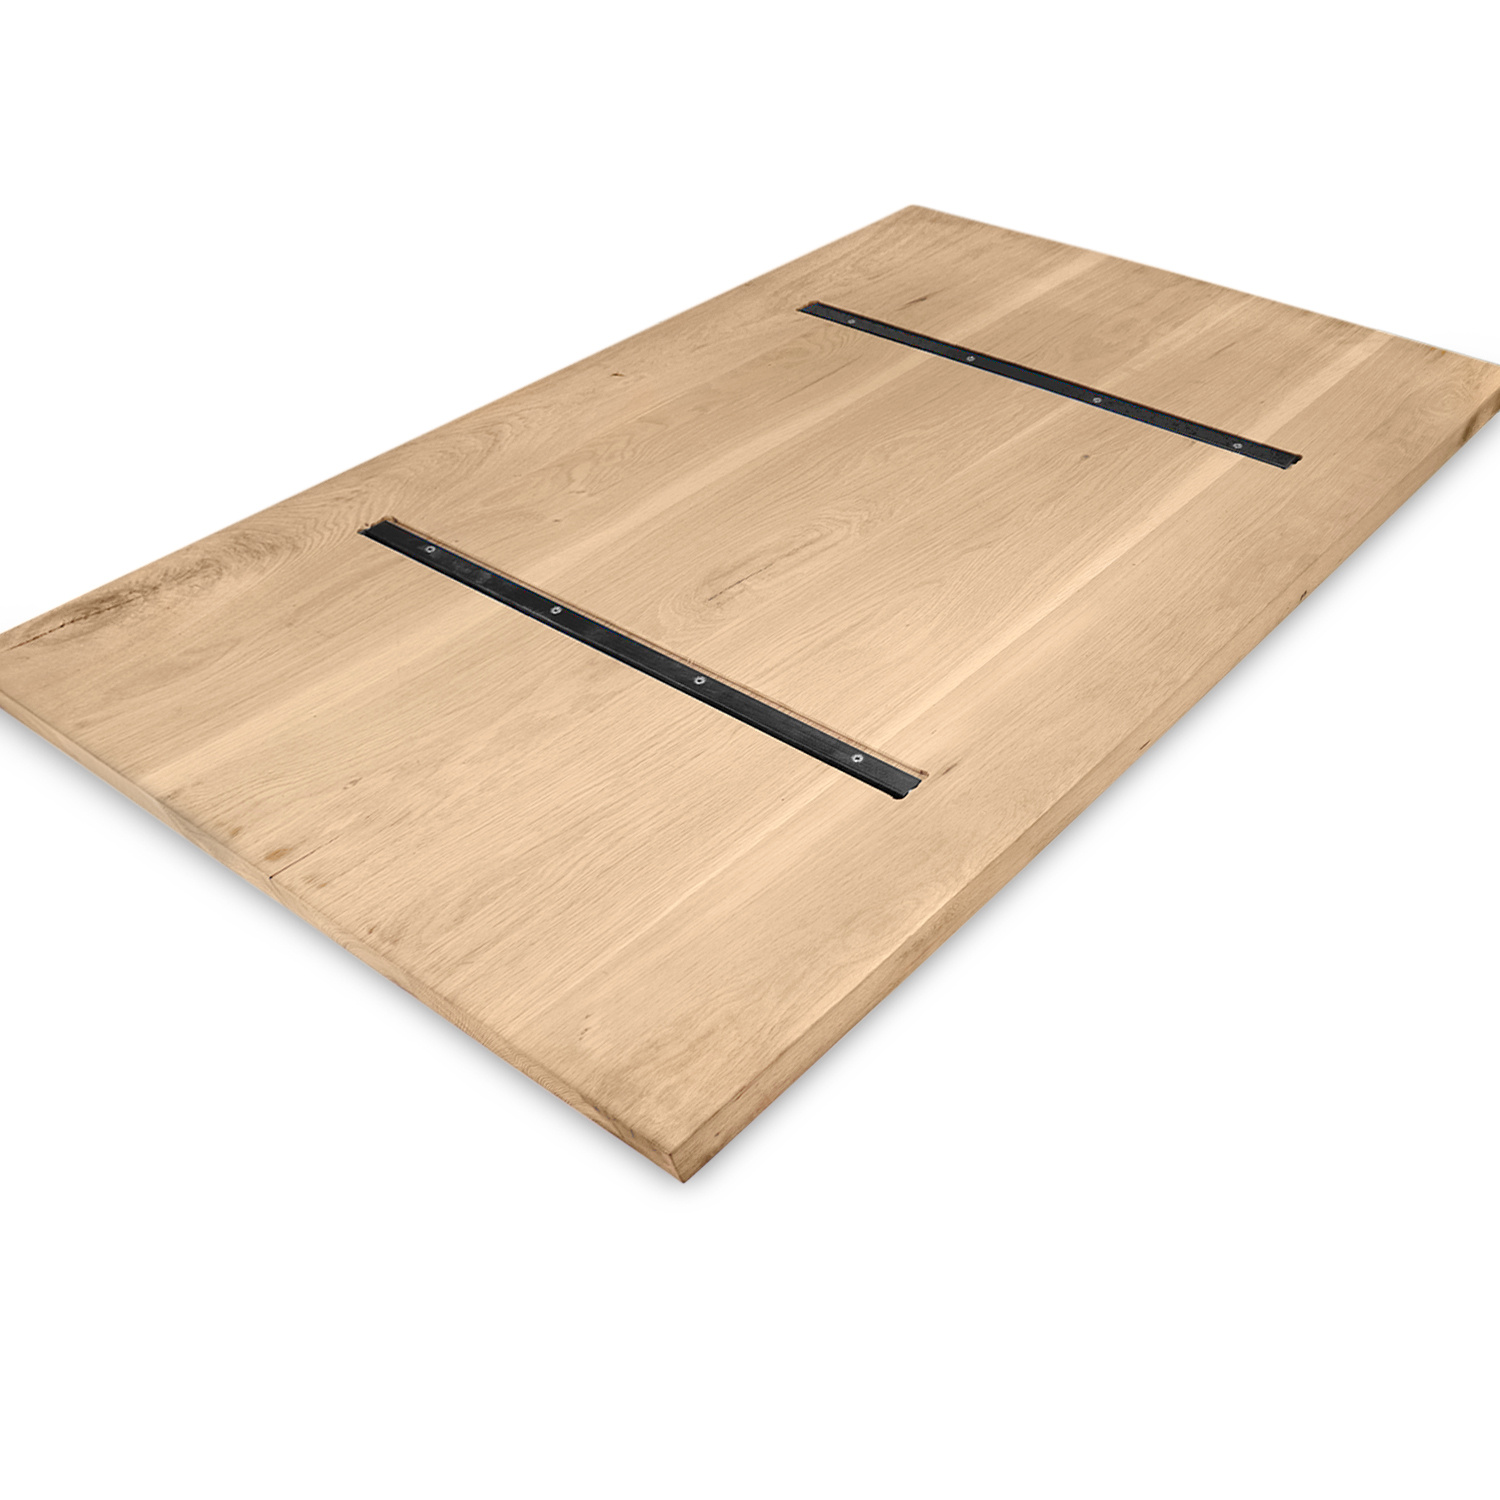  Eiken tafelblad - 3 cm dik (1-laag) - Diverse afmetingen - extra rustiek Europees eikenhout - met extra brede lamellen (circa 14-20 cm) - verlijmd kd 8-12%